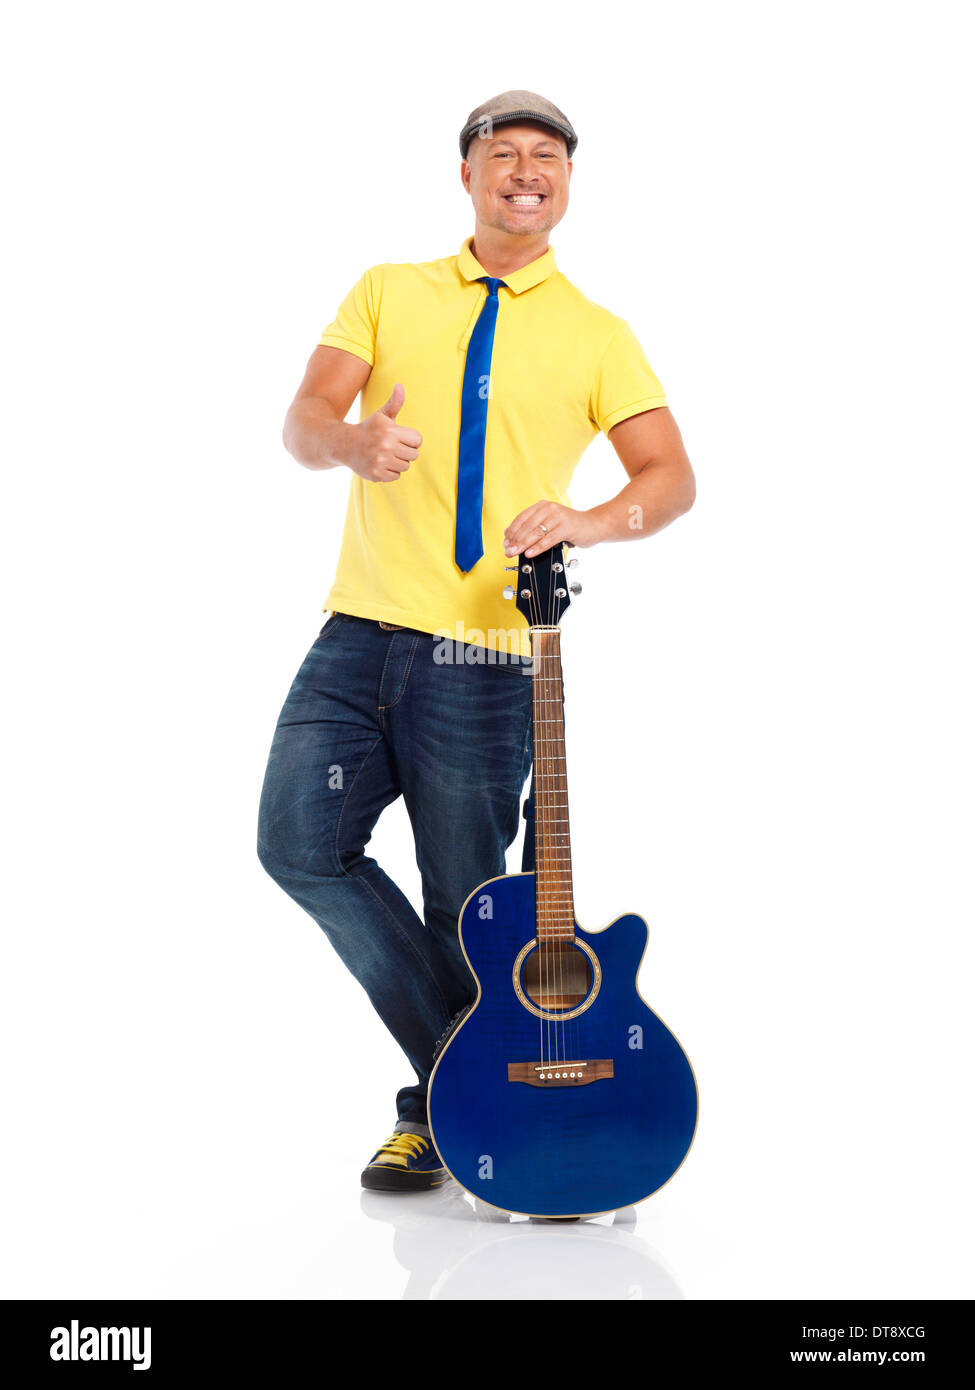 Portrait of a happy smiling young man guitariste debout avec une guitare acoustique isolé sur fond blanc Banque D'Images